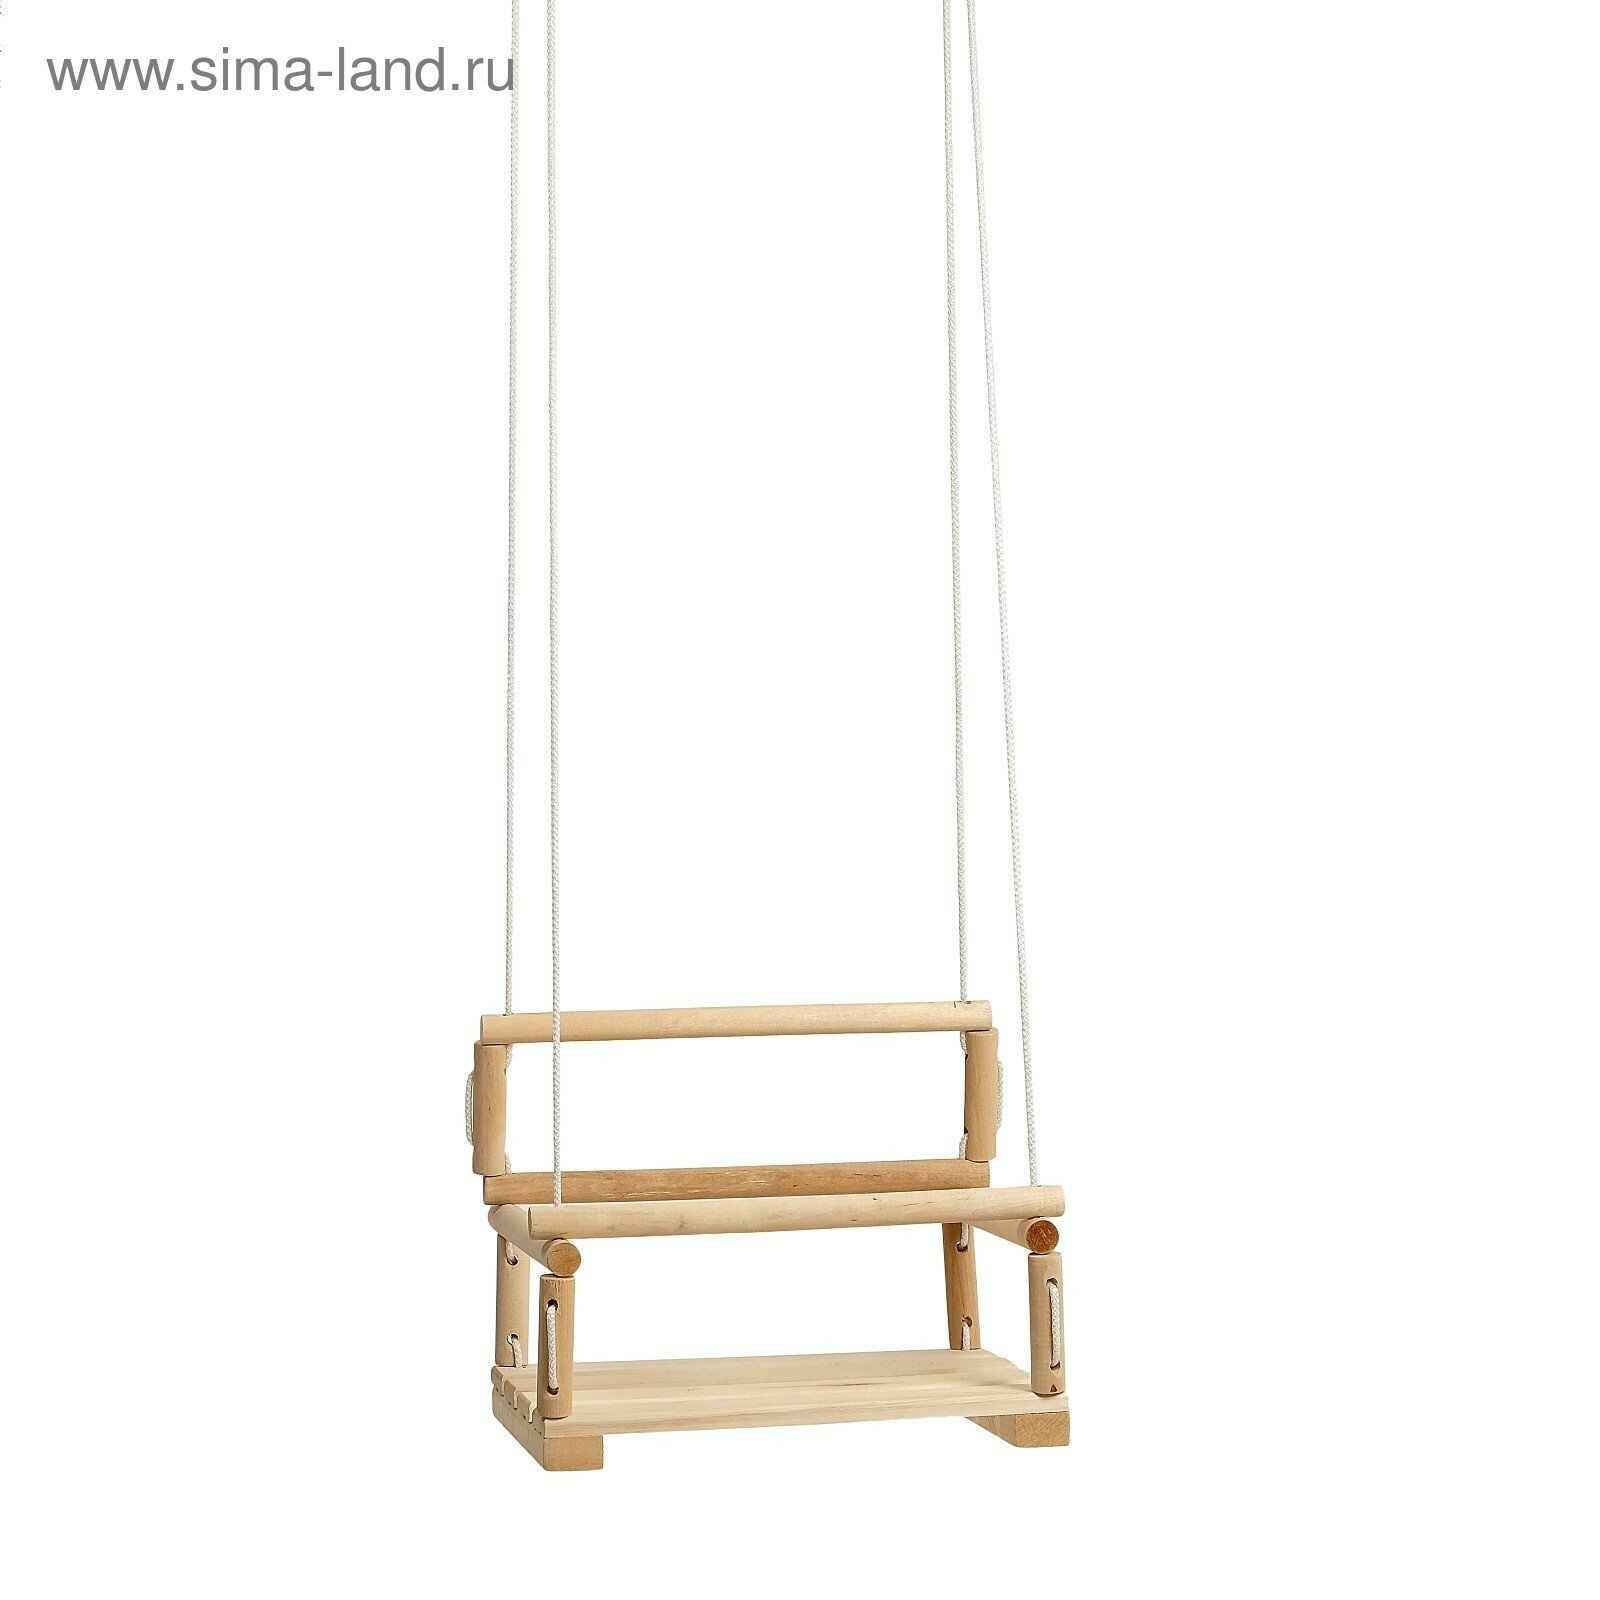 Кресло подвесное деревянное сиденье 28×28см (1шт.)